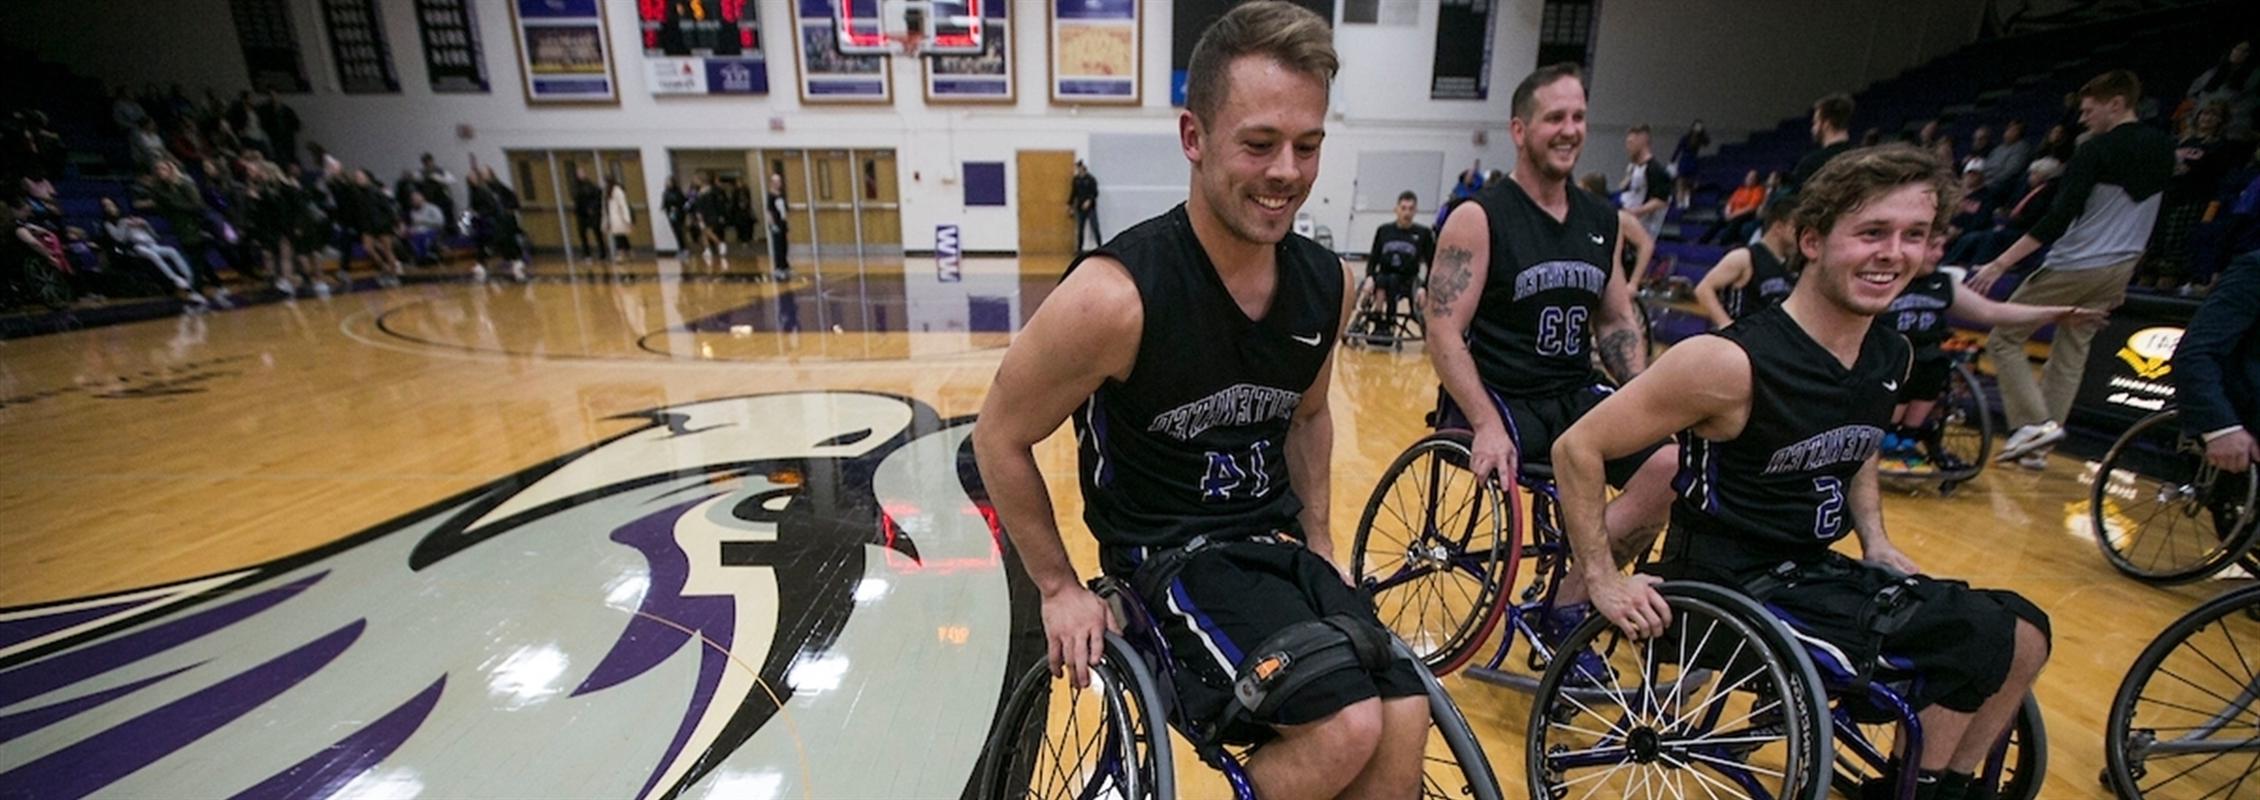 轮椅篮球